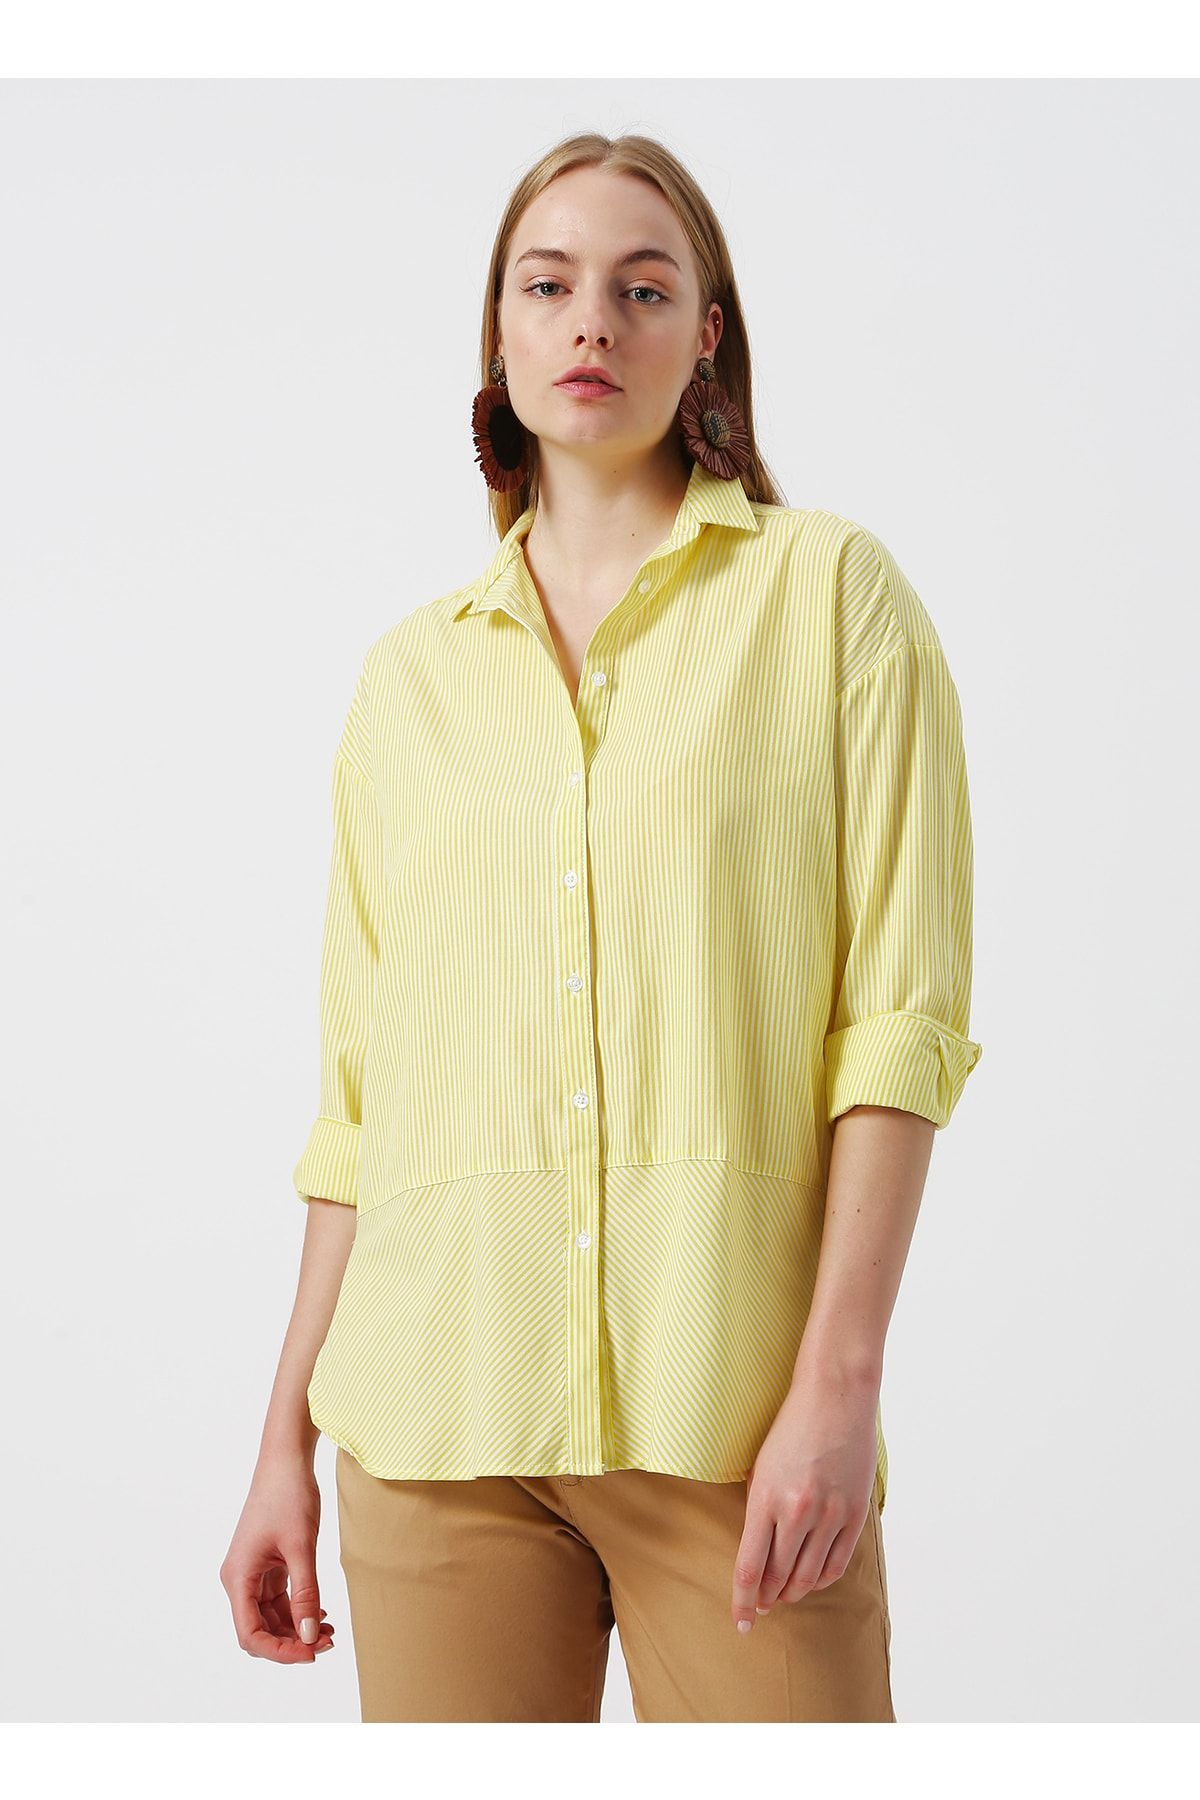 LİMON COMPANY Limon Jesper Gömlek Yaka Çizgi Desenli Geniş Fit Sarı Kadın Tunik